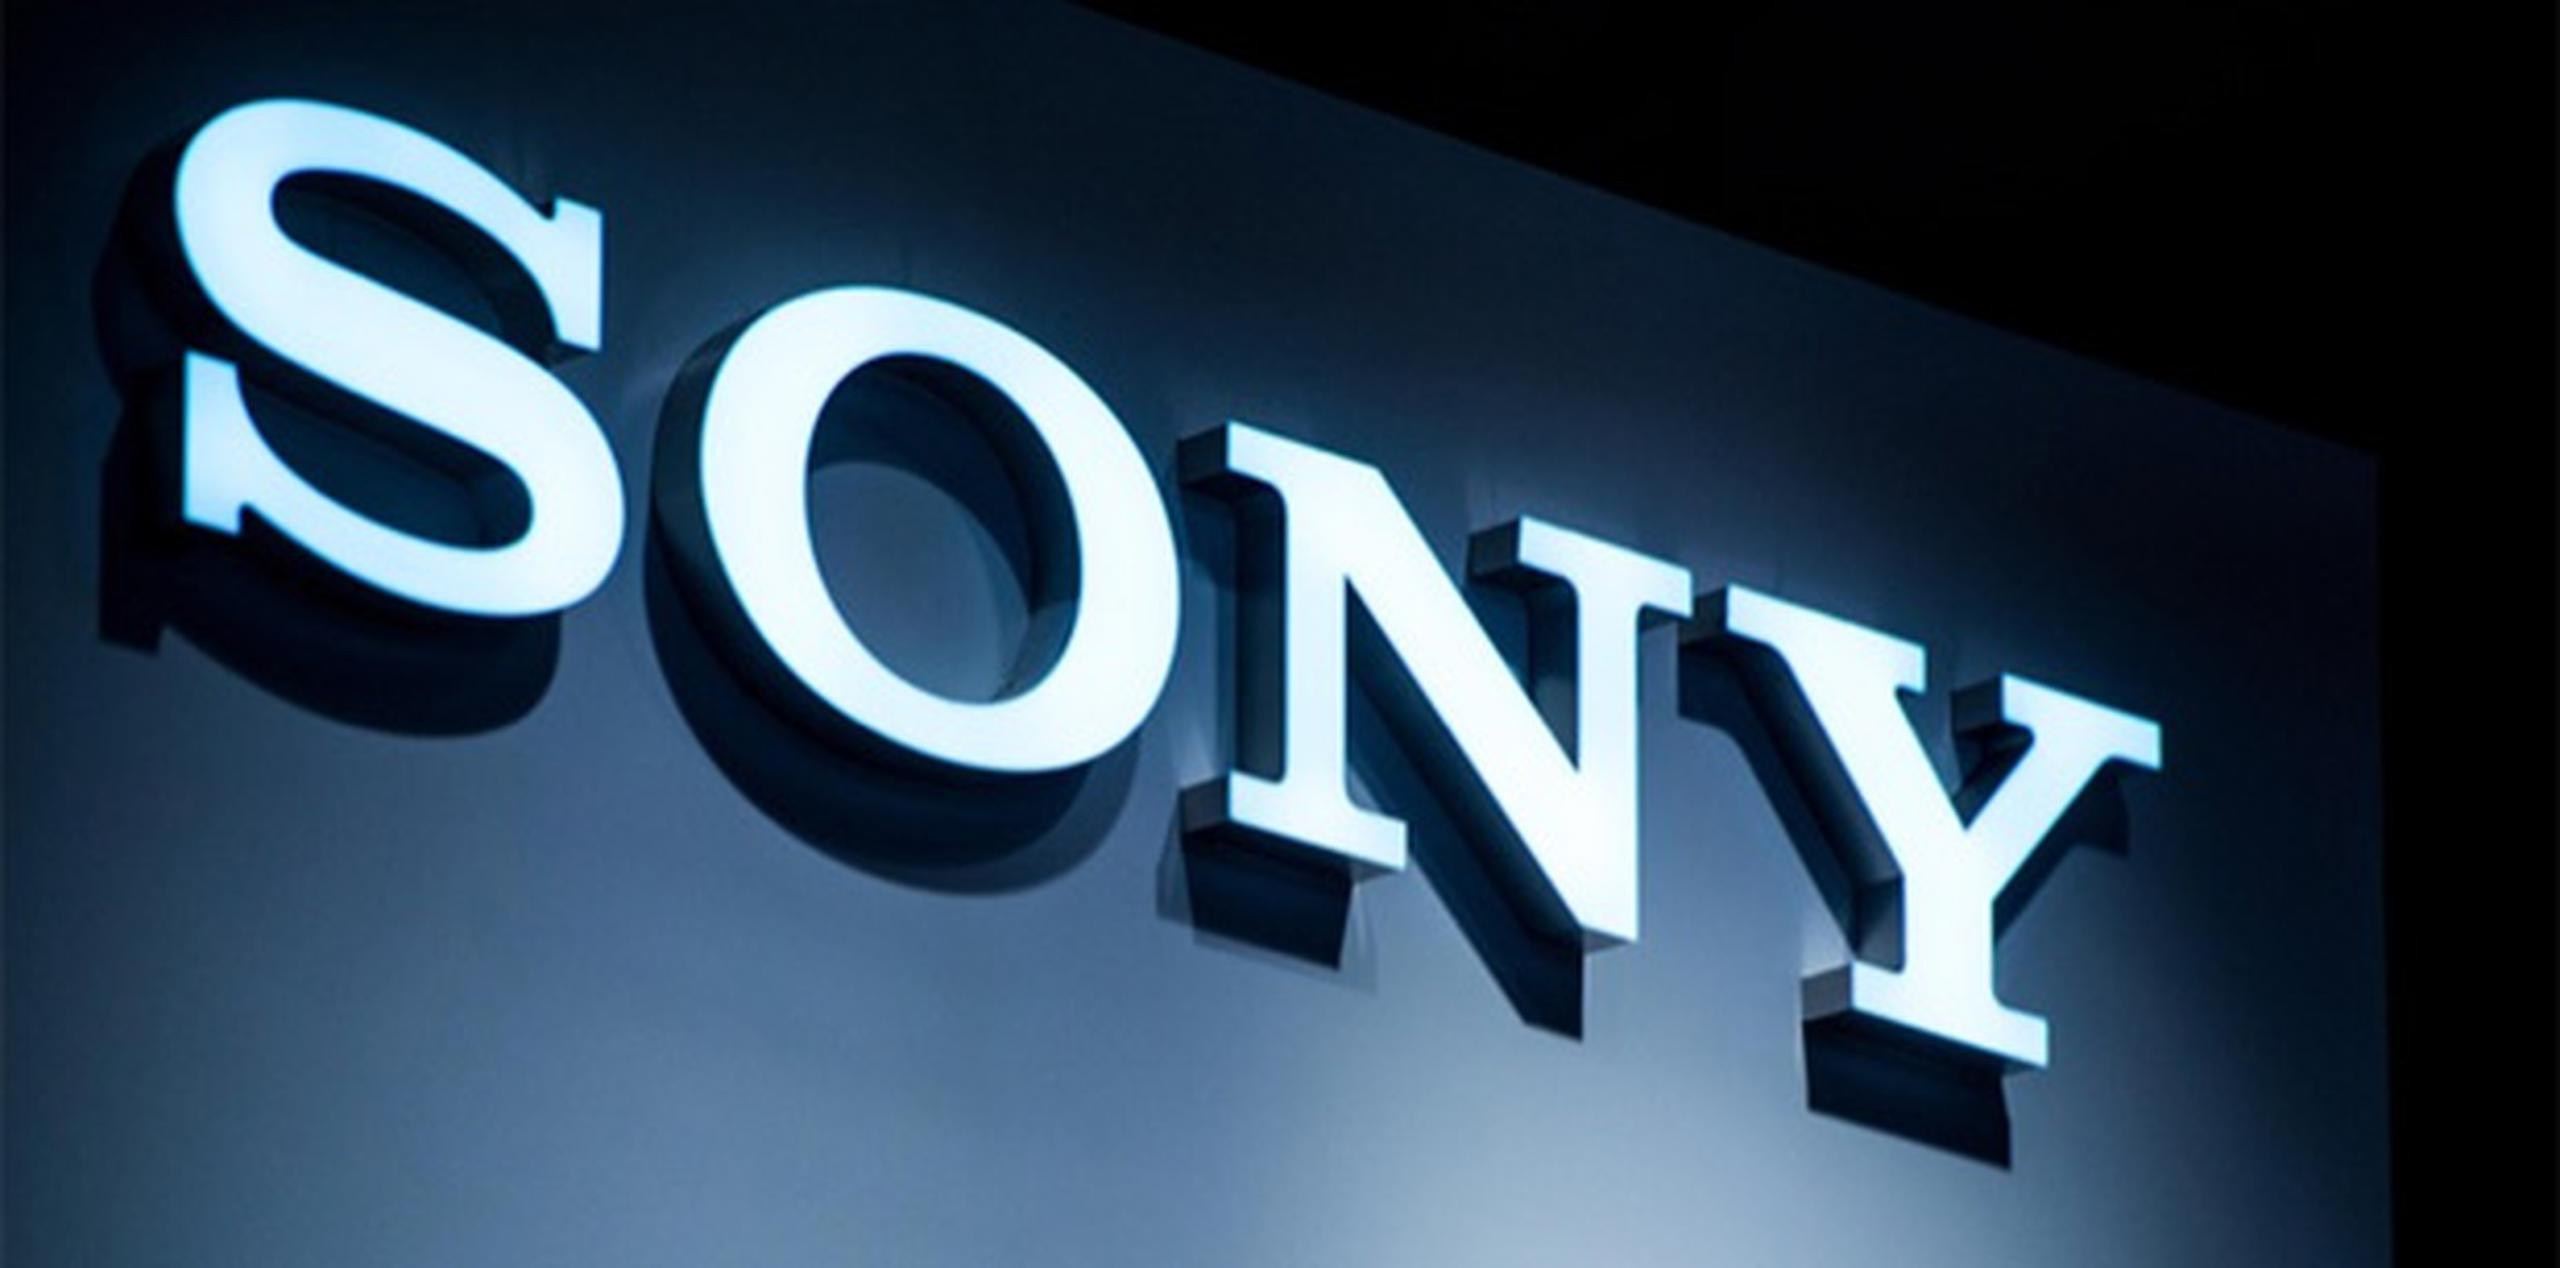 Los analistas señalan que la iniciativa de Sony responde a que Estados Unidos es el primer mercado mundial de videojuegos por volumen de ventas ligeramente por encima de Europa y muy lejos de Japón. (Archivo)